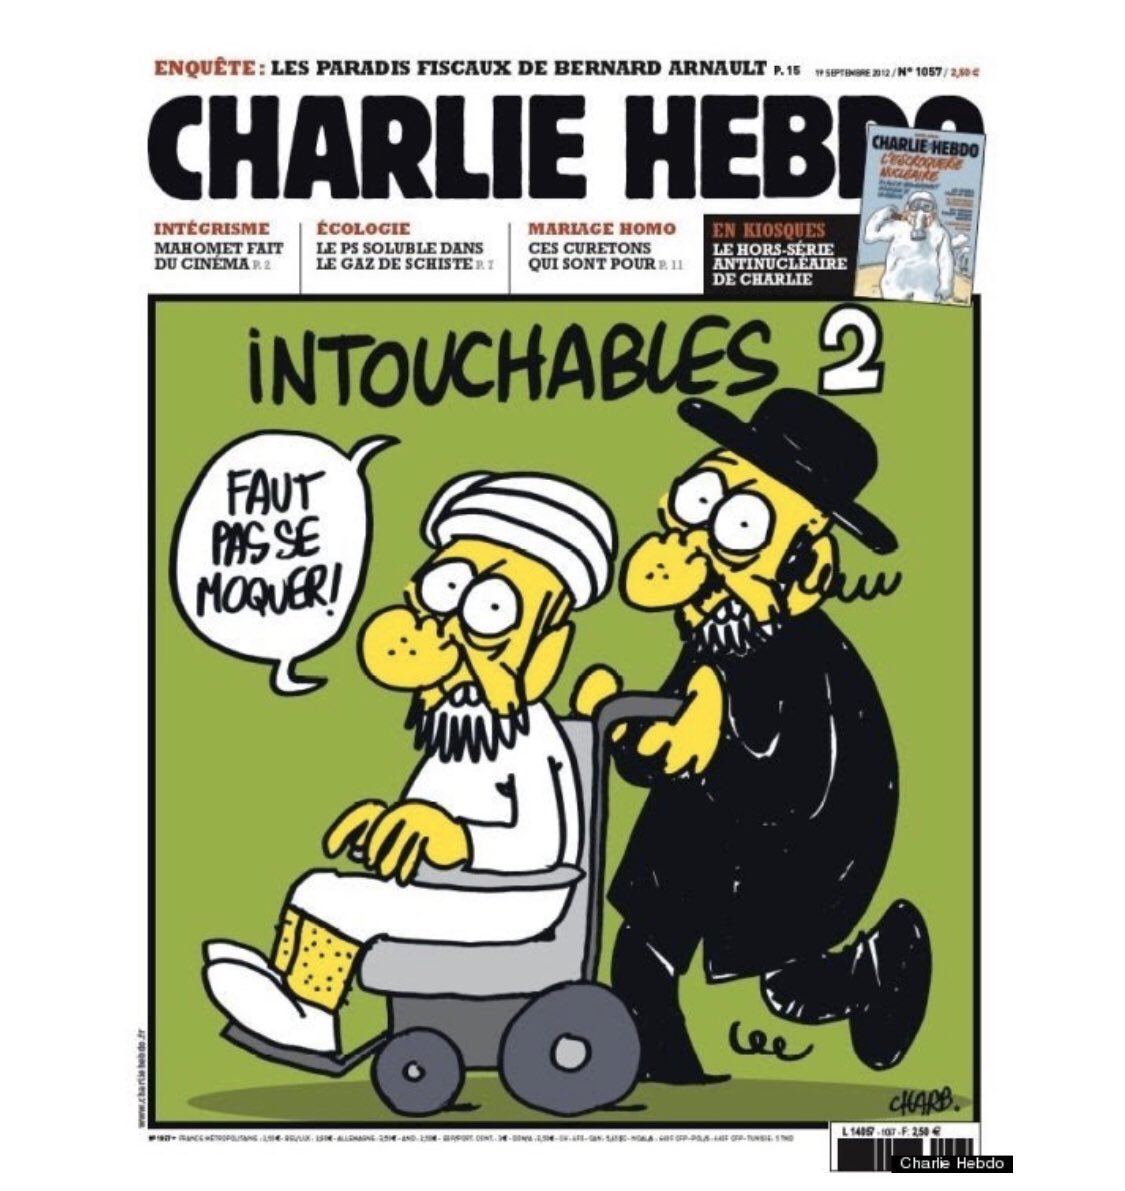 Os dejo con los dibujos que causaron todo el revuelo. #JeSuisCharlie ¡VIVA LA LIBERTAD DE EXPRESIÓN!